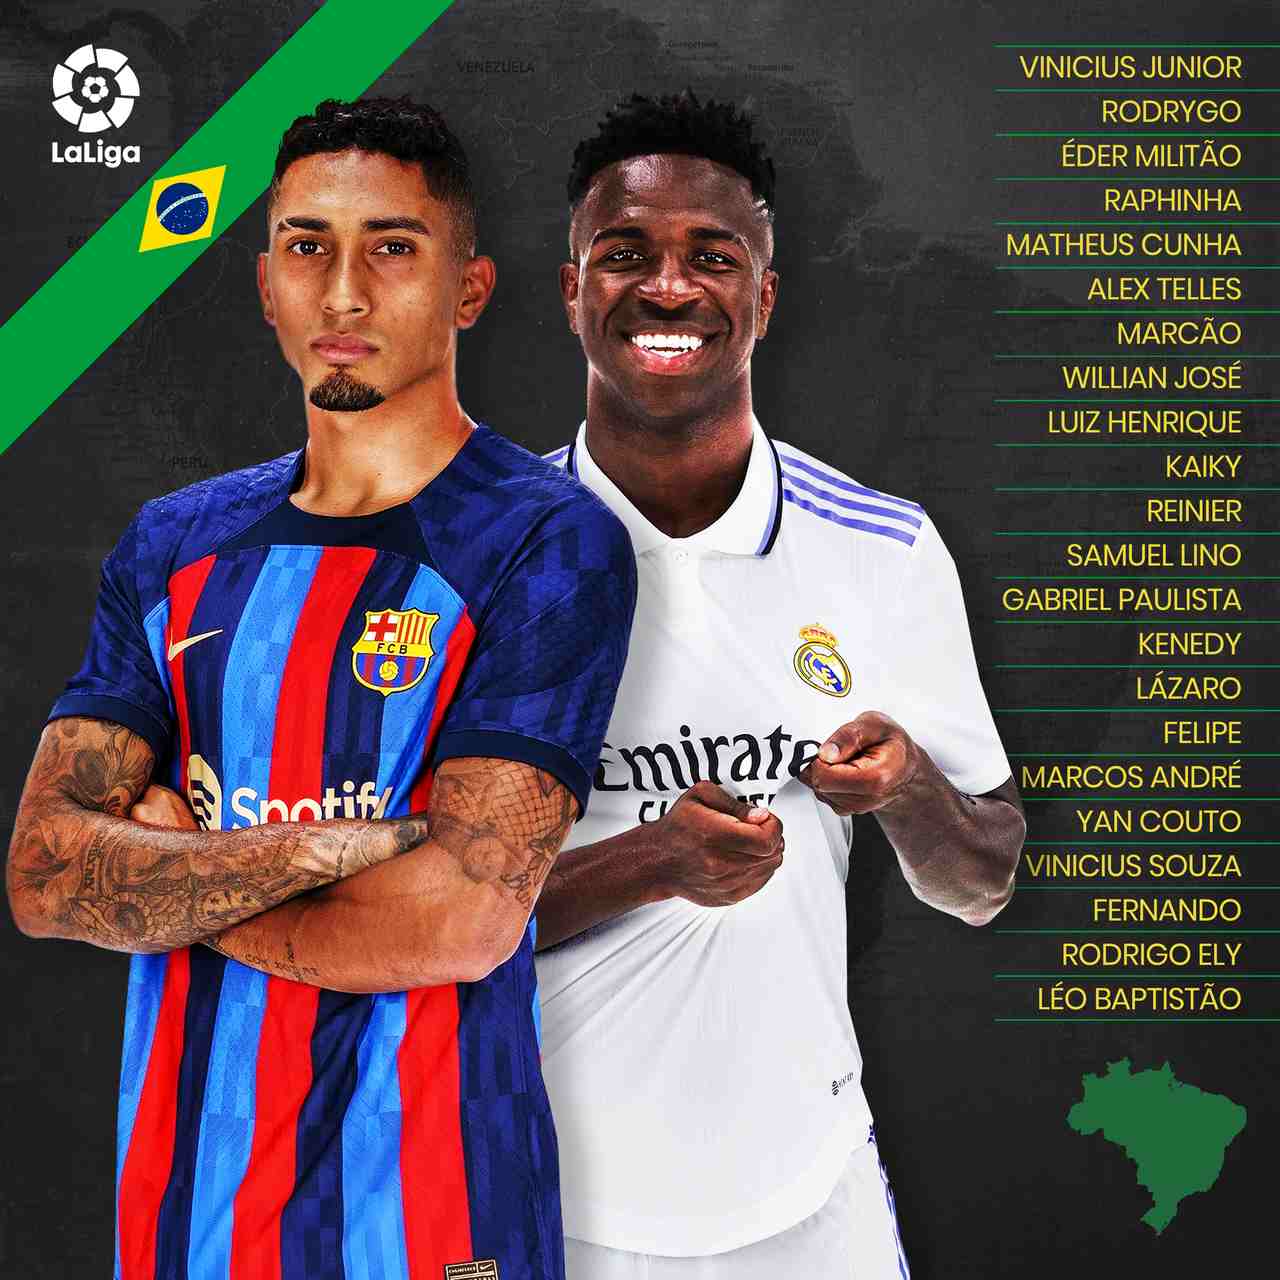 Protagonistas, apostas e ídolos: conheça os brasileiros da temporada 2022-23  de LaLiga